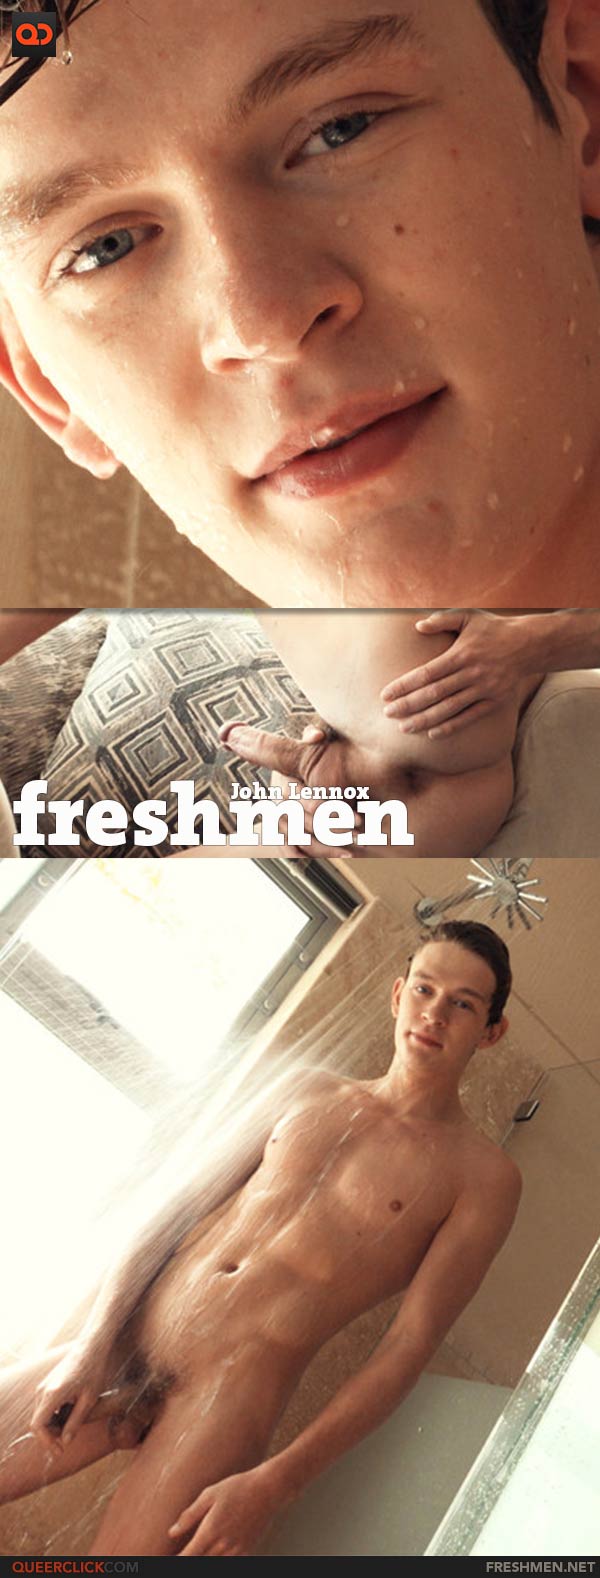 Freshmen: John Lennox